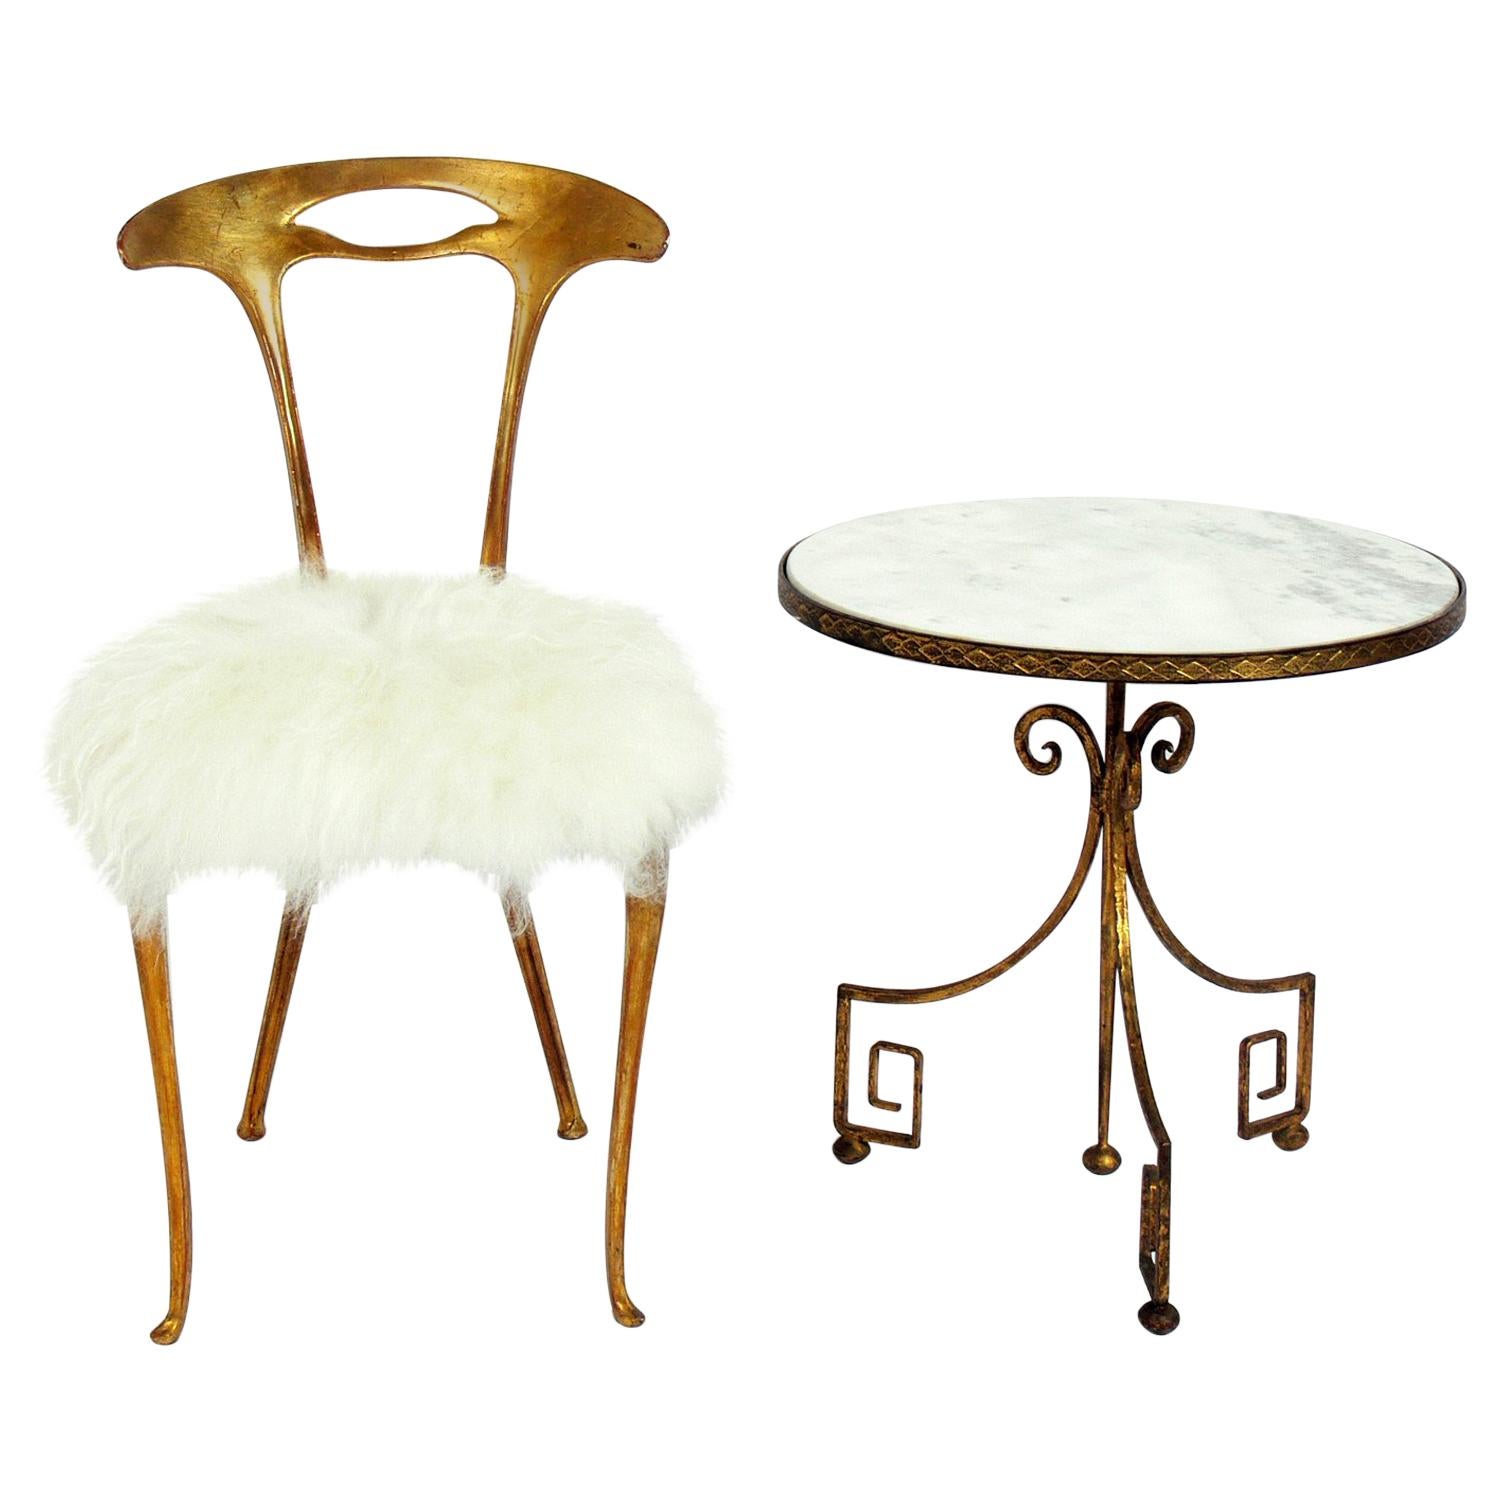 Palladio Gilt Metal Chair and Table